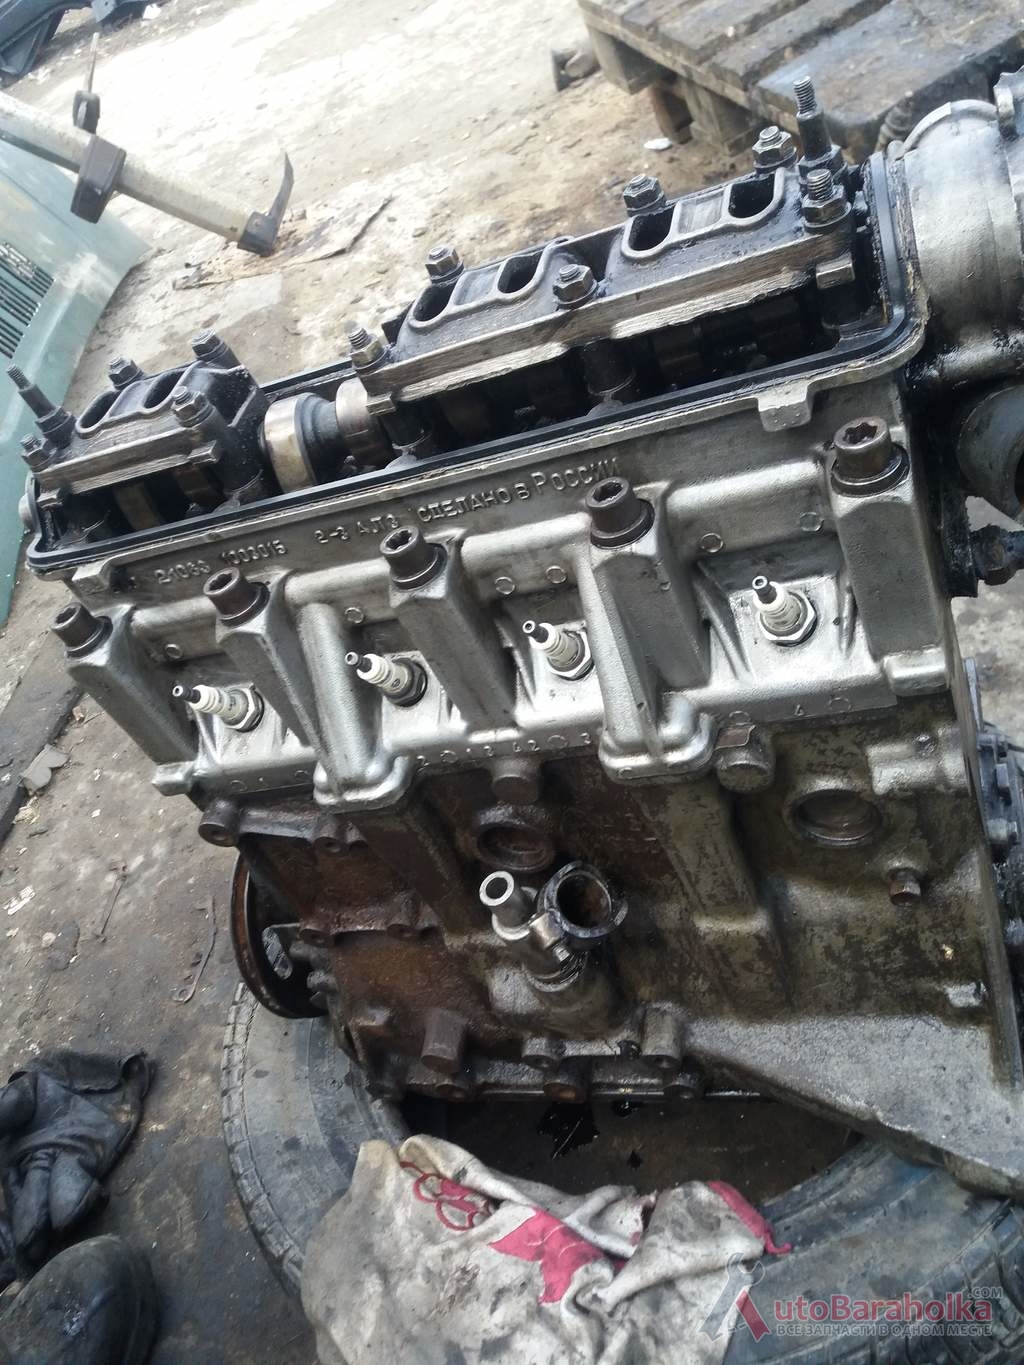 Продам Двигатель Мотор ВАЗ 2108 21083 2110 2114 из Польши с рабочей машины, малый пробег. Гарантия Херсон